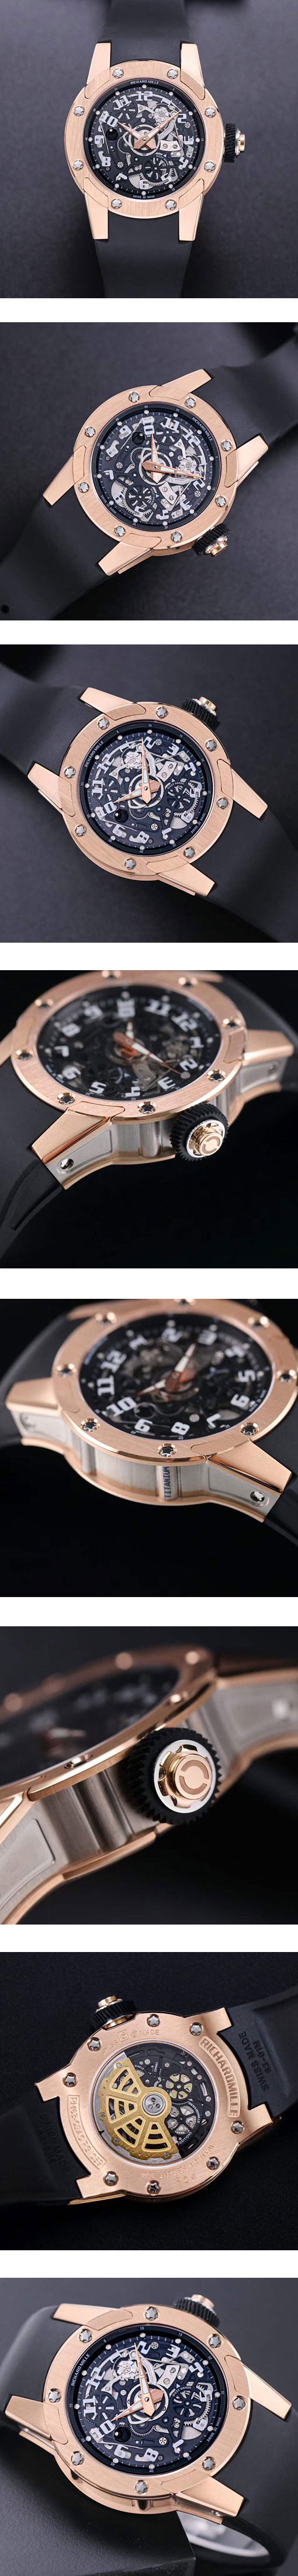 リシャール・ミル オートマティック ディジーハンズ RM 63-01 スーパーコピー時計 NOOB